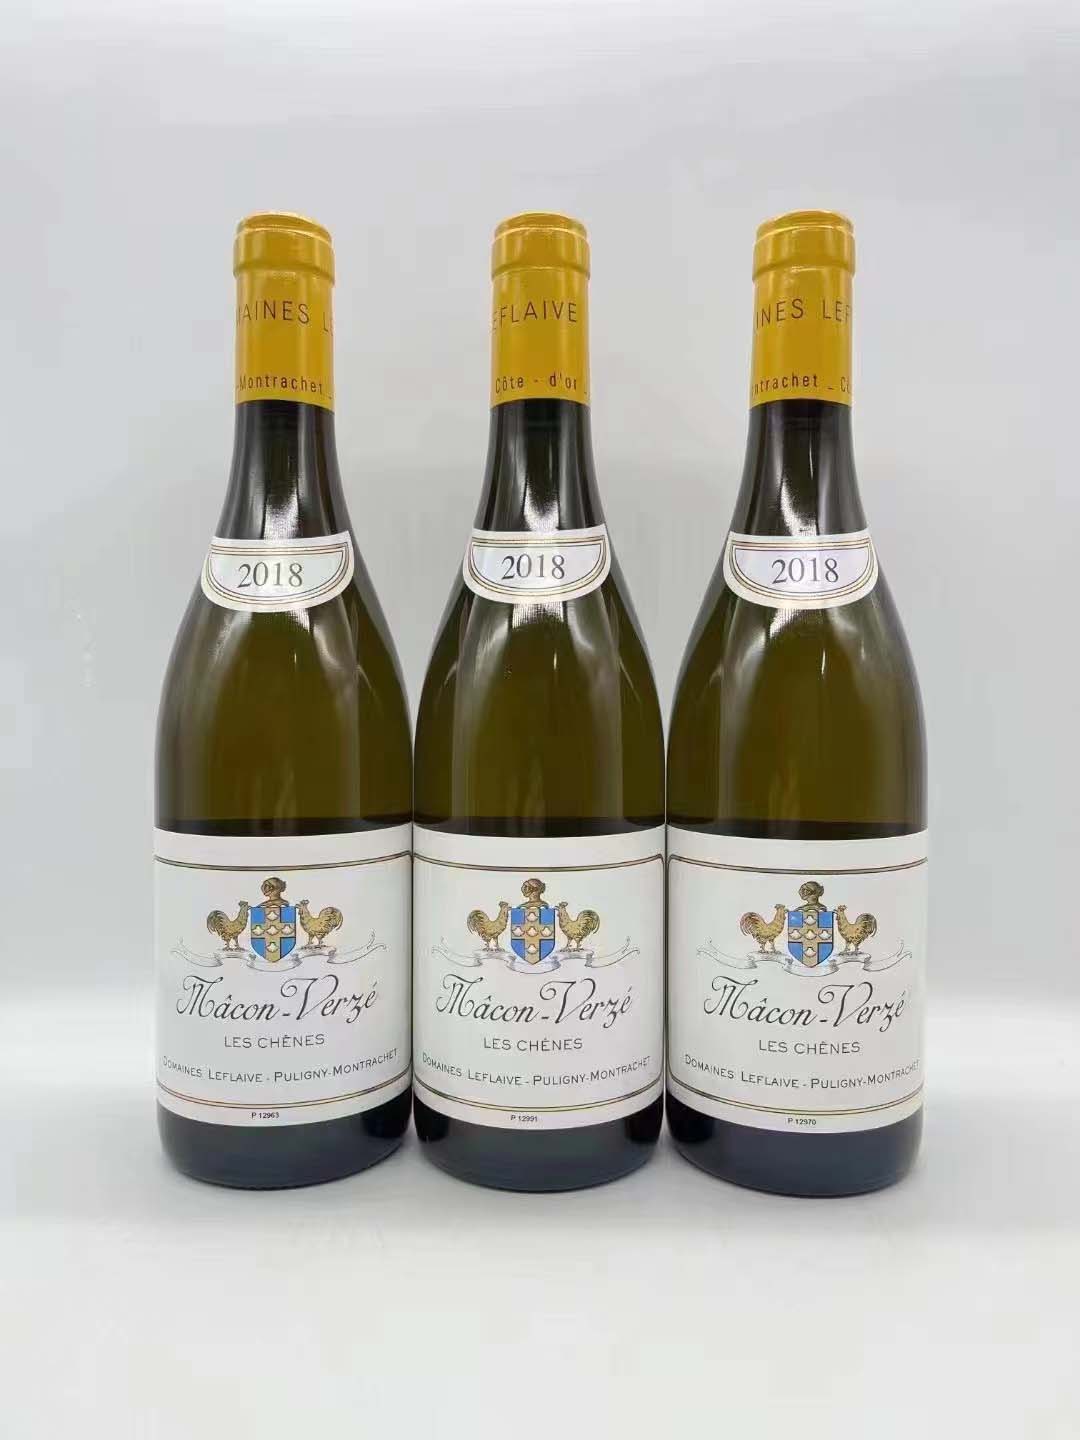 法国勃艮第双鸡勒弗莱酒庄干白葡萄酒(全系列)